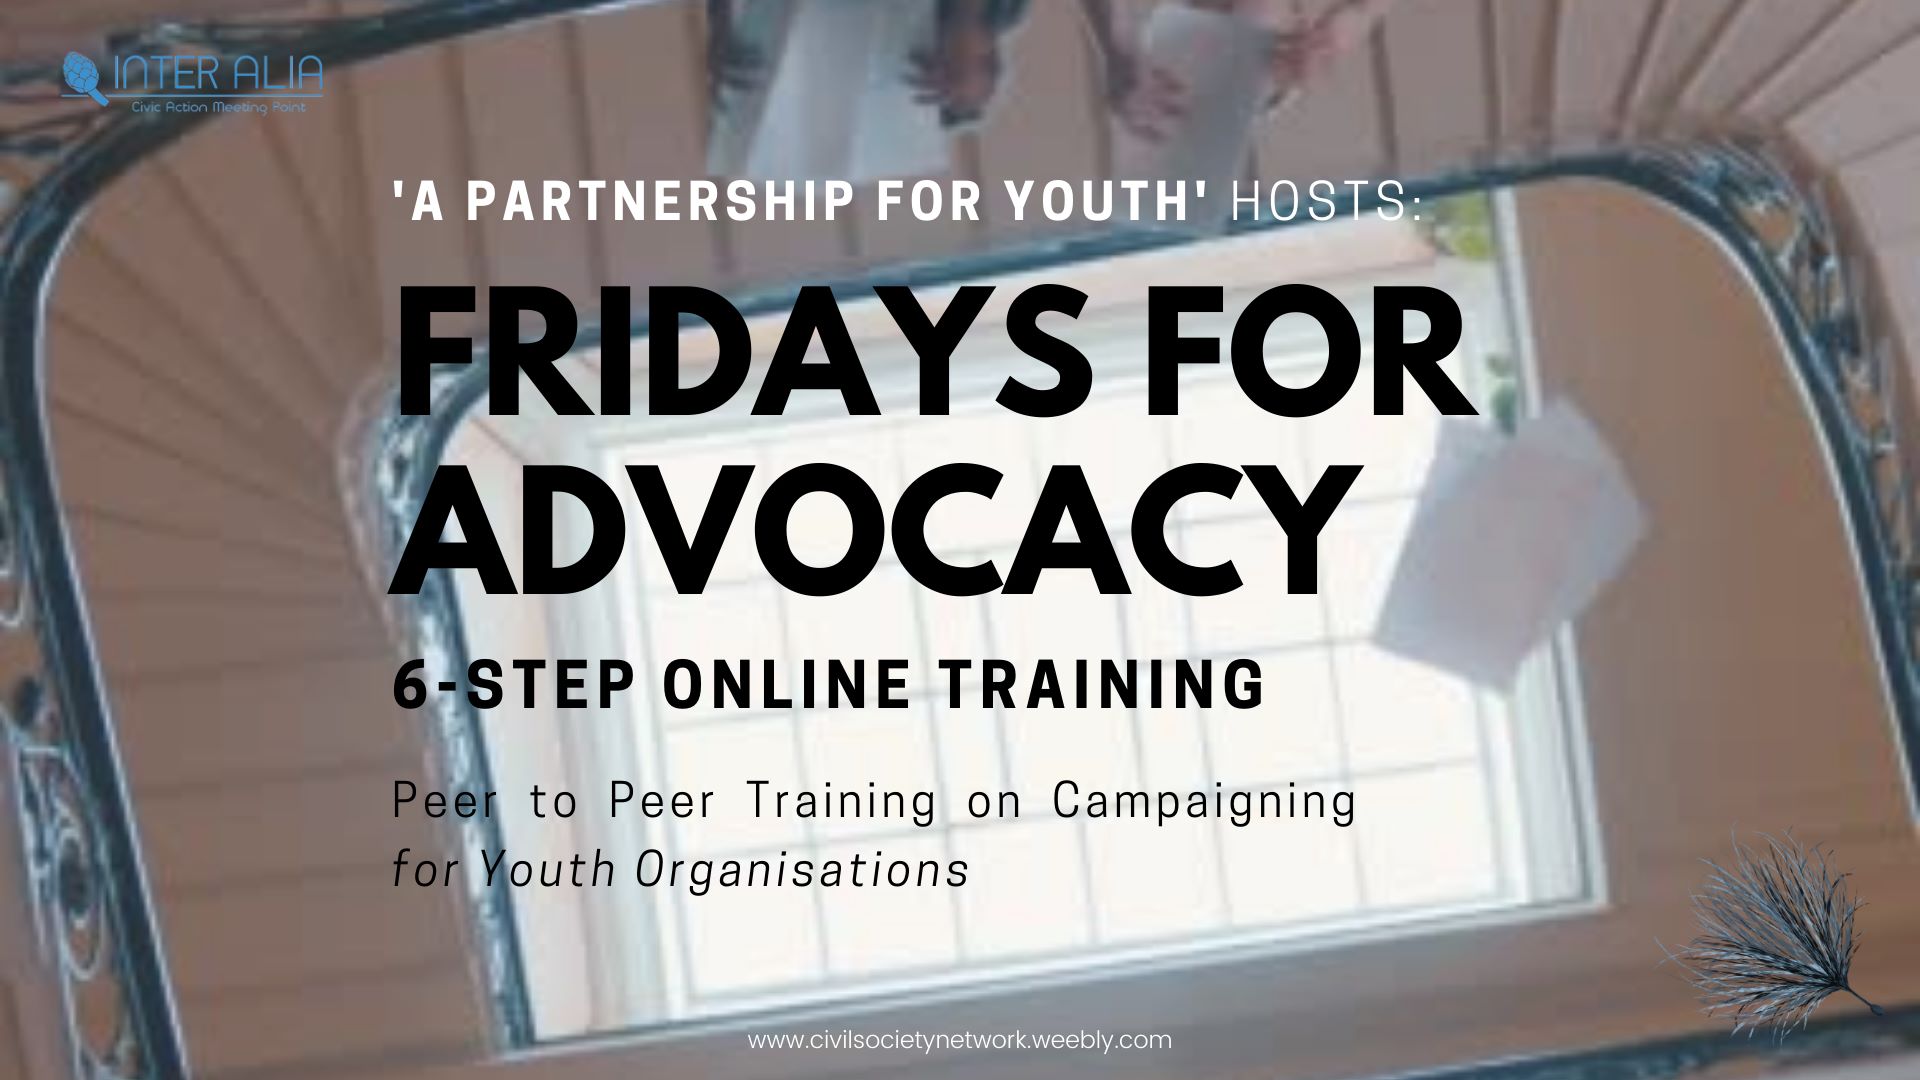 Primera sessió “Fridays for Advocacy” realitzada!